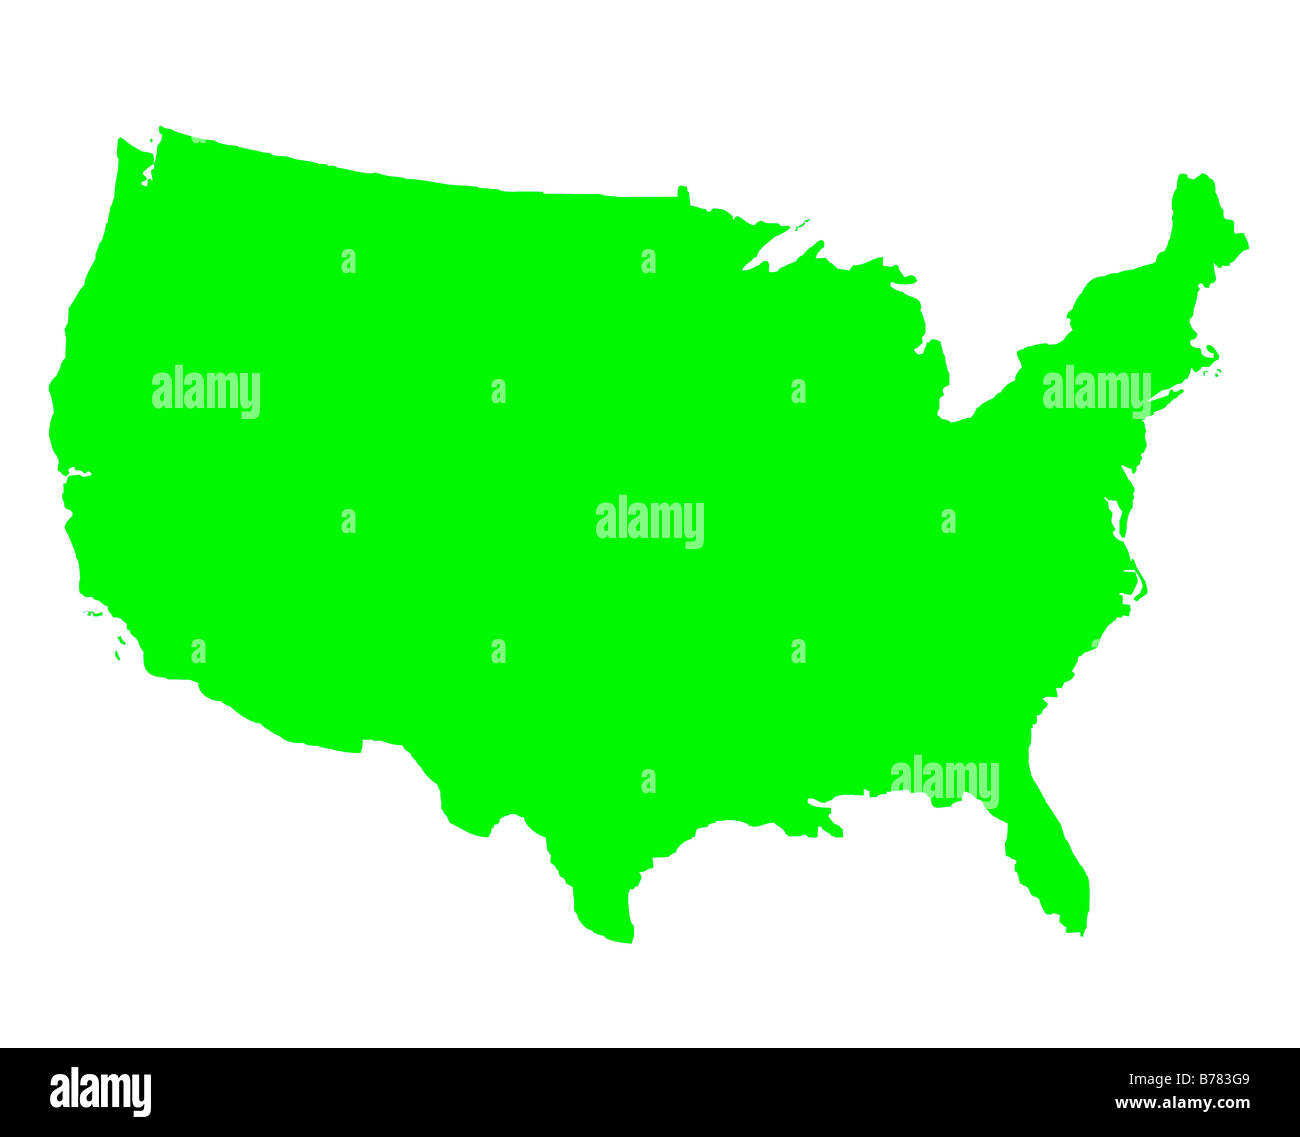 Etats-unis d'Amérique carte contour en vert isolé sur fond blanc Banque D'Images